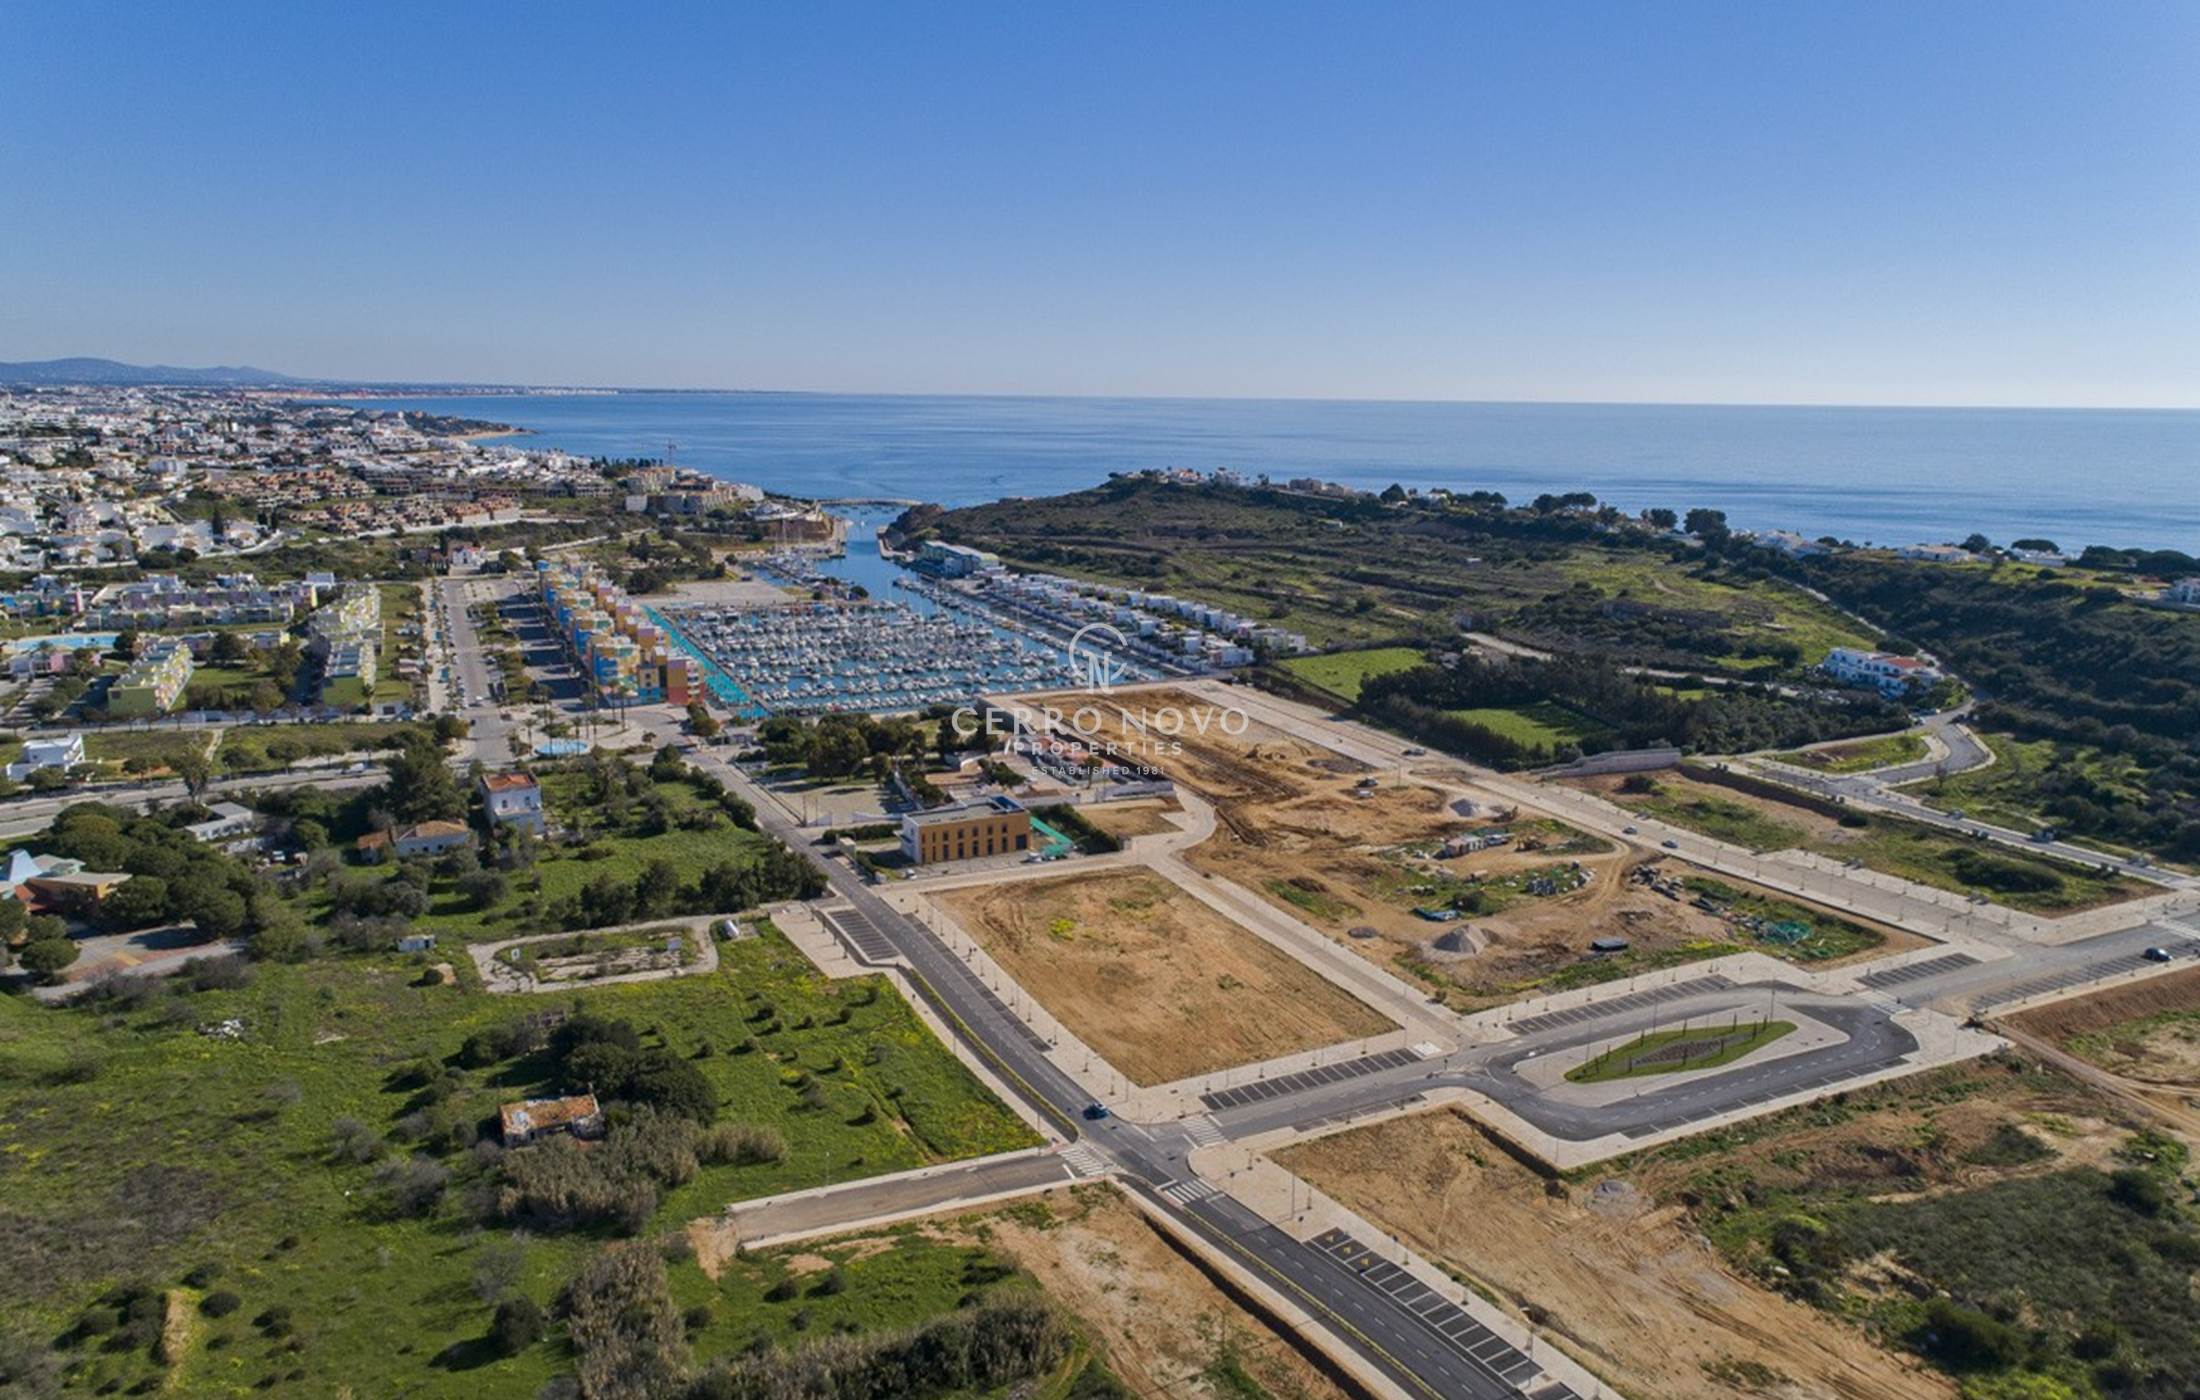 Parcelles pour construire des villas à la marina d'Albufeira